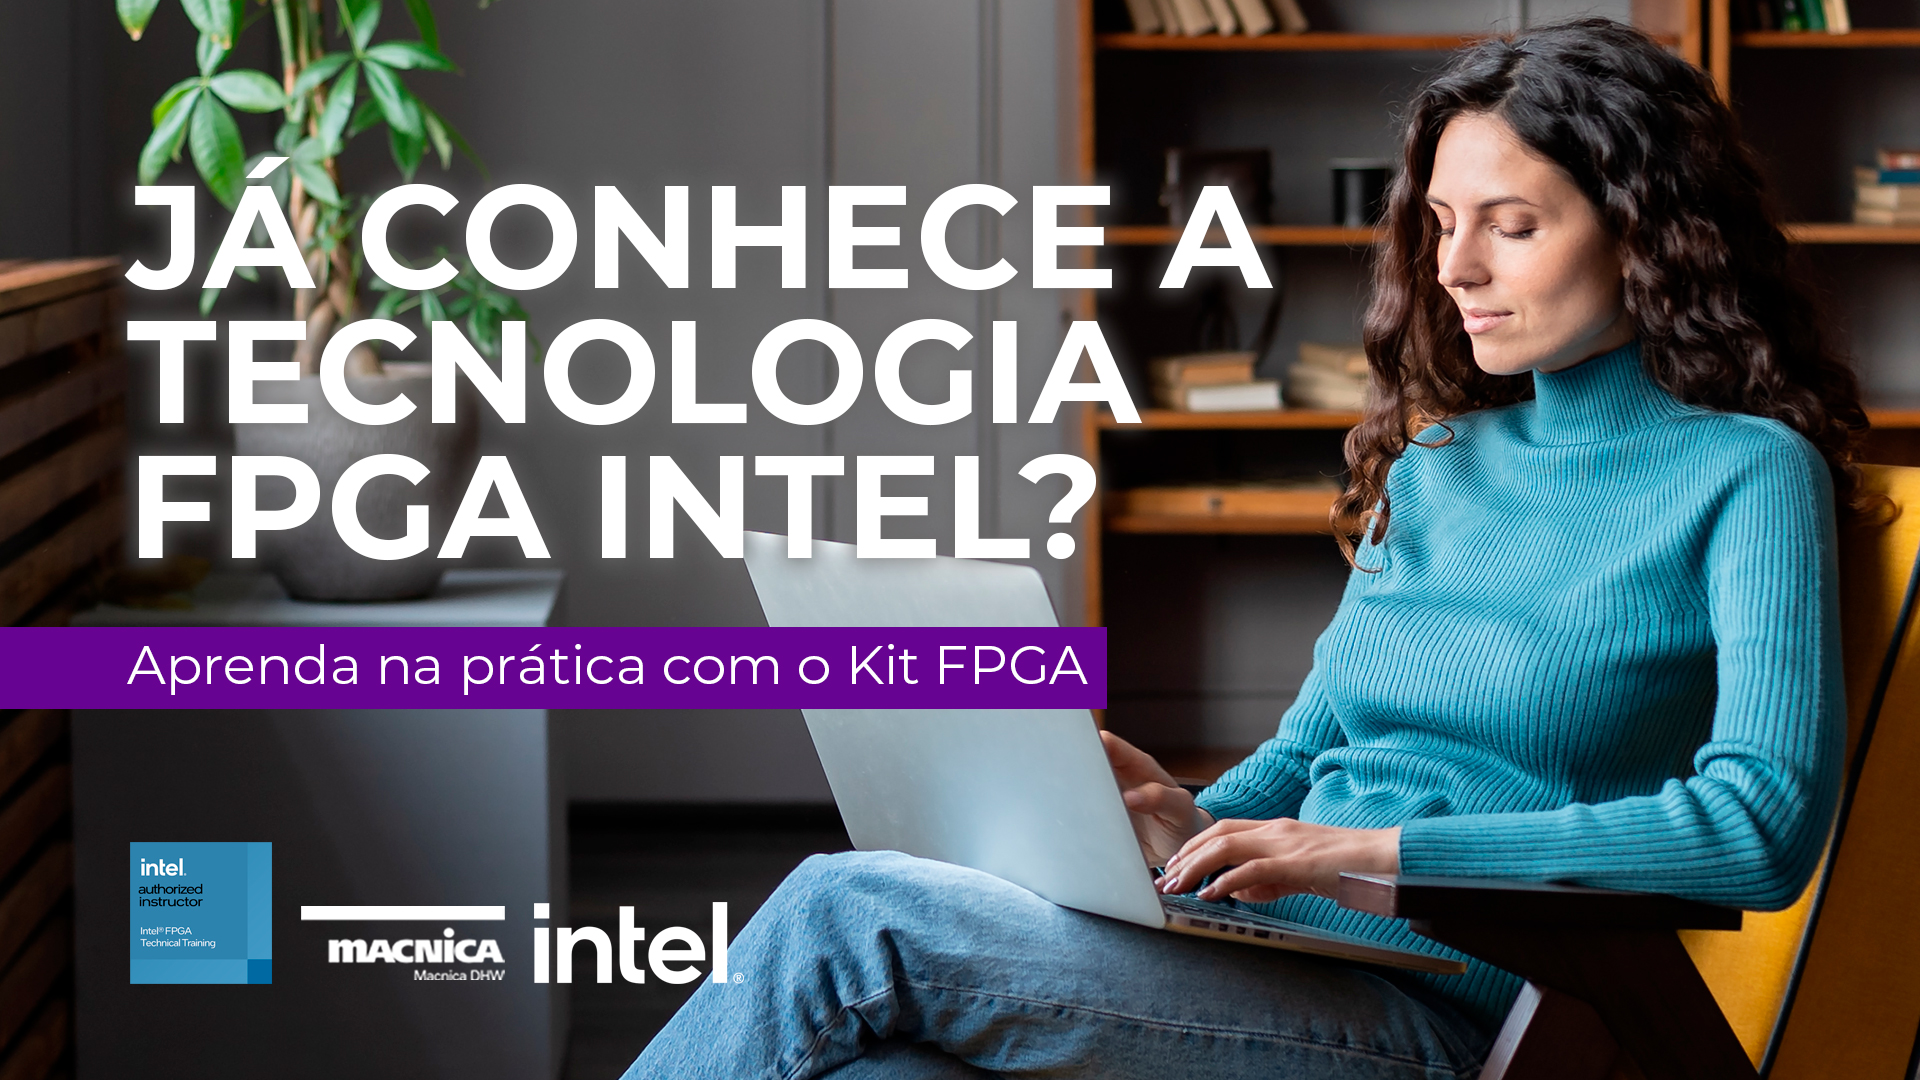 Tecnologia FPGA Intel aprenda na prática com kit FPGA